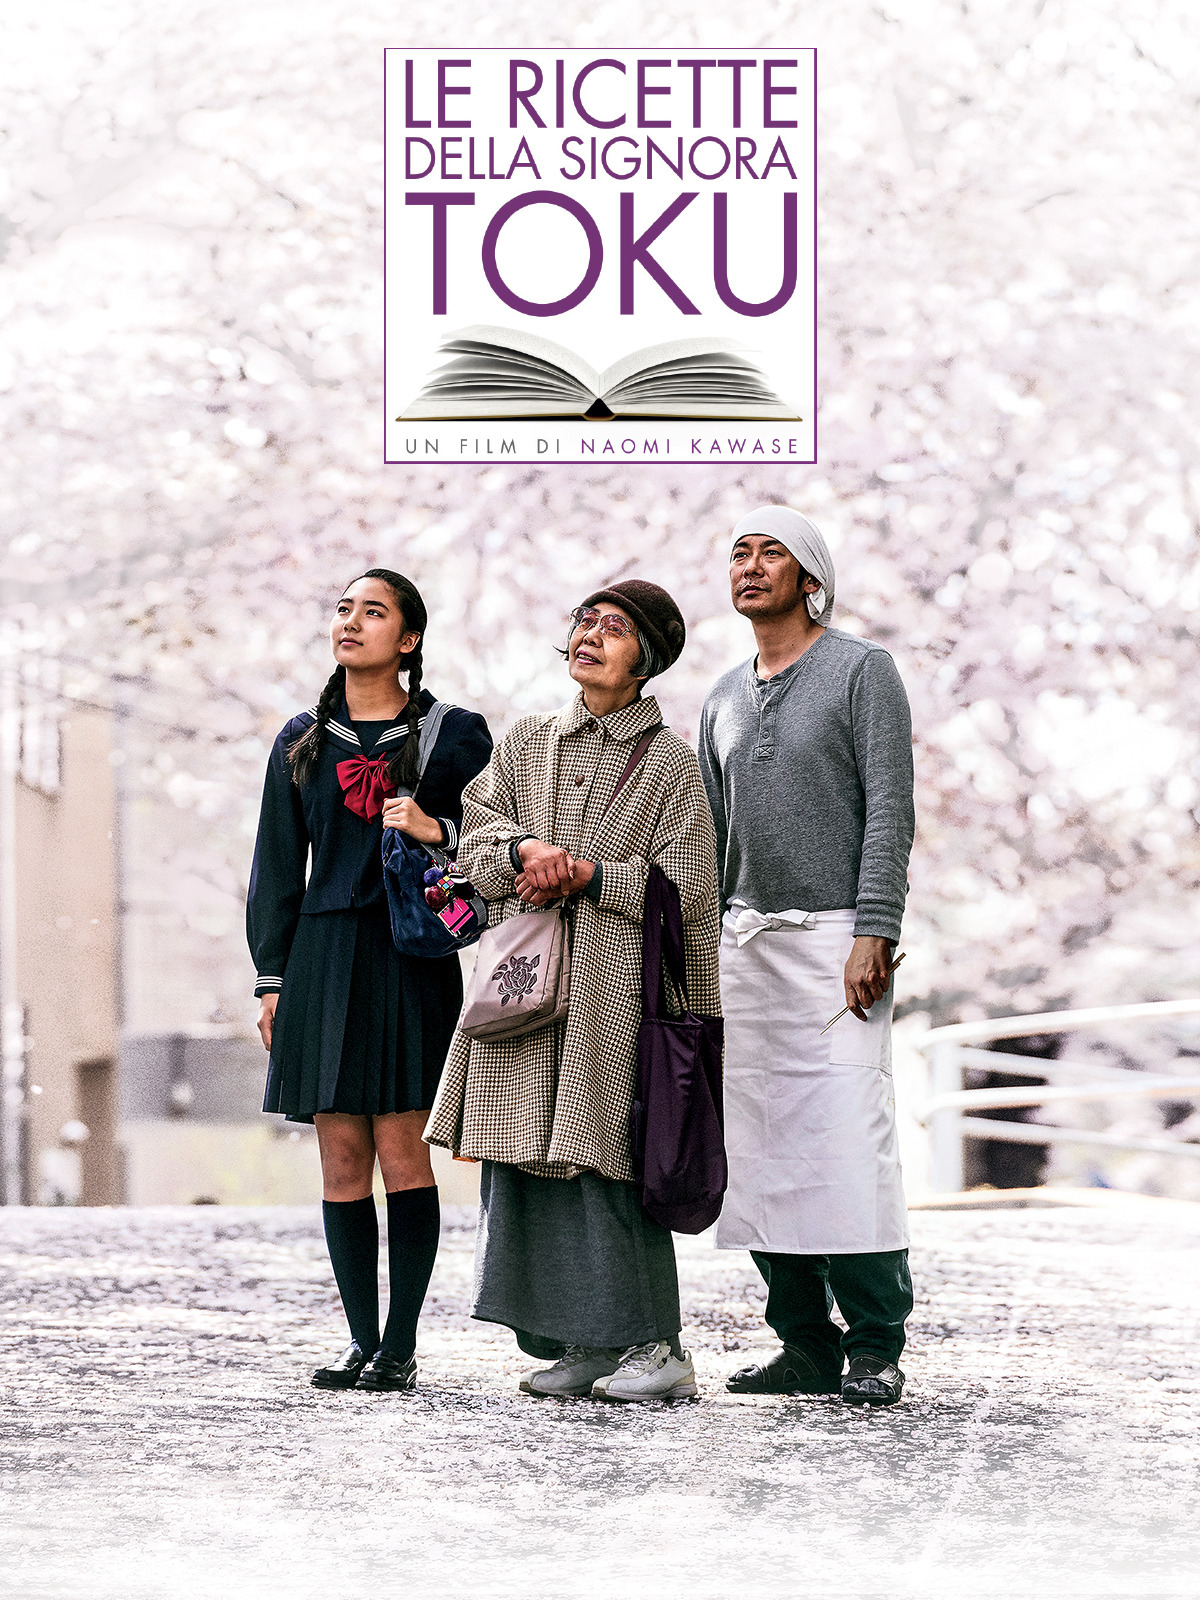 Le ricette della signora Toku (2015)